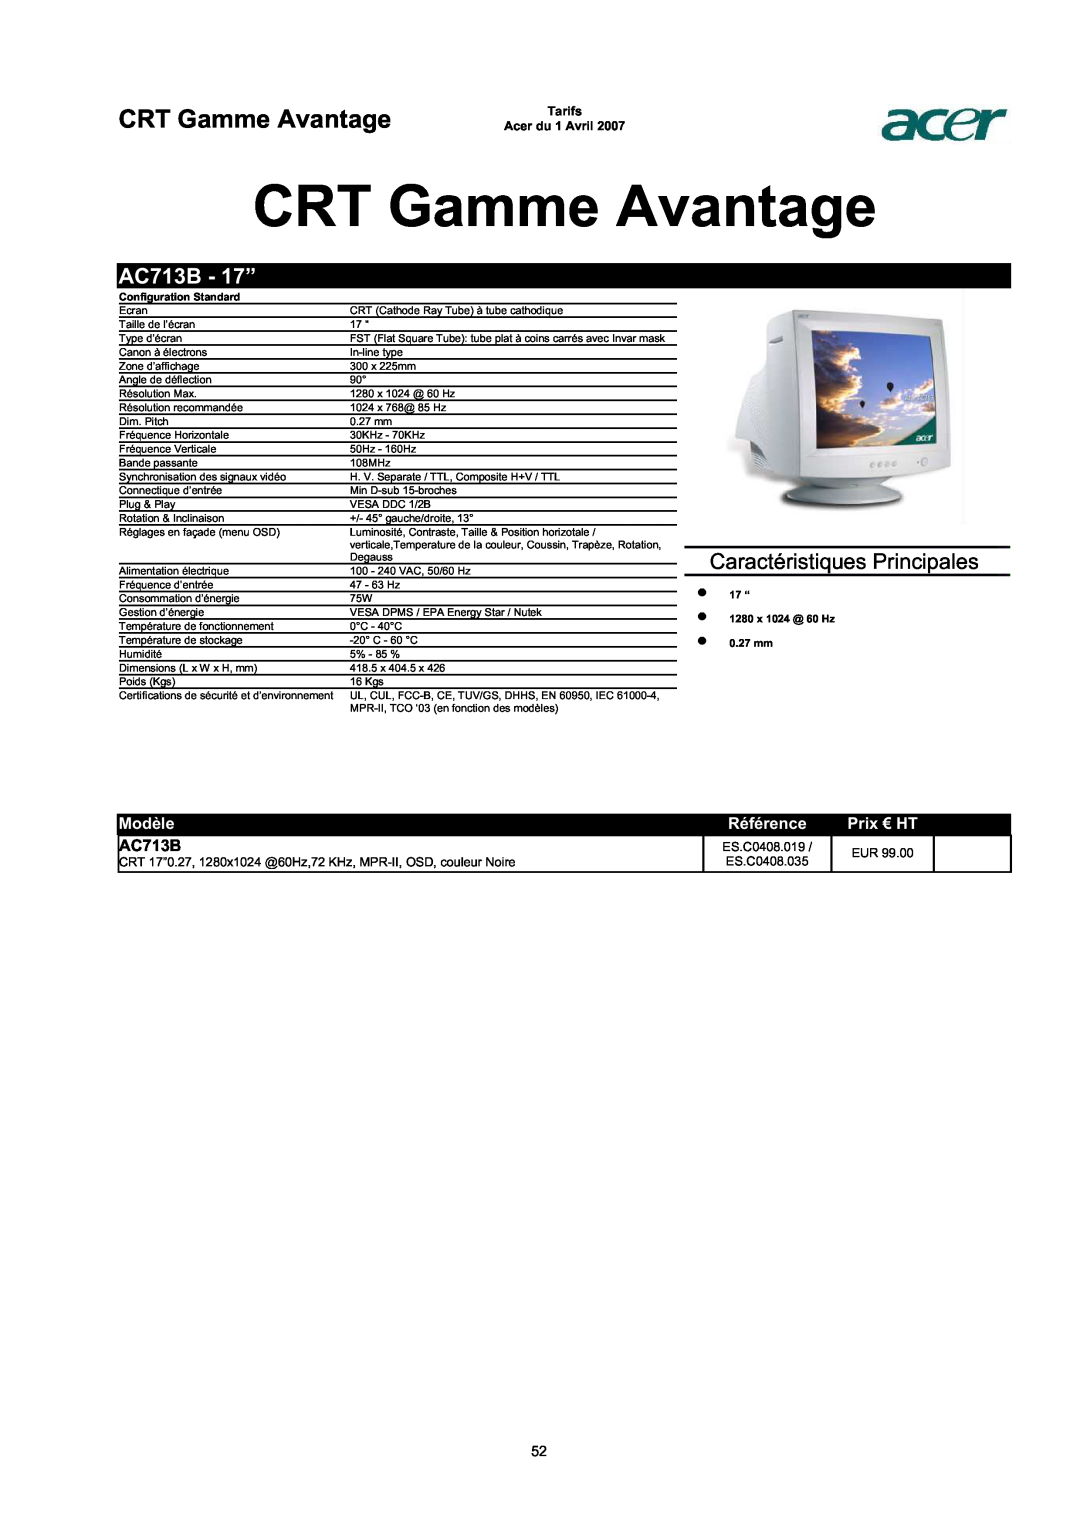 Acer AC713B-17 dimensions CRT Gamme Avantage, AC713B - 17”, Caractéristiques Principales, Modèle, Référence, Prix € HT 